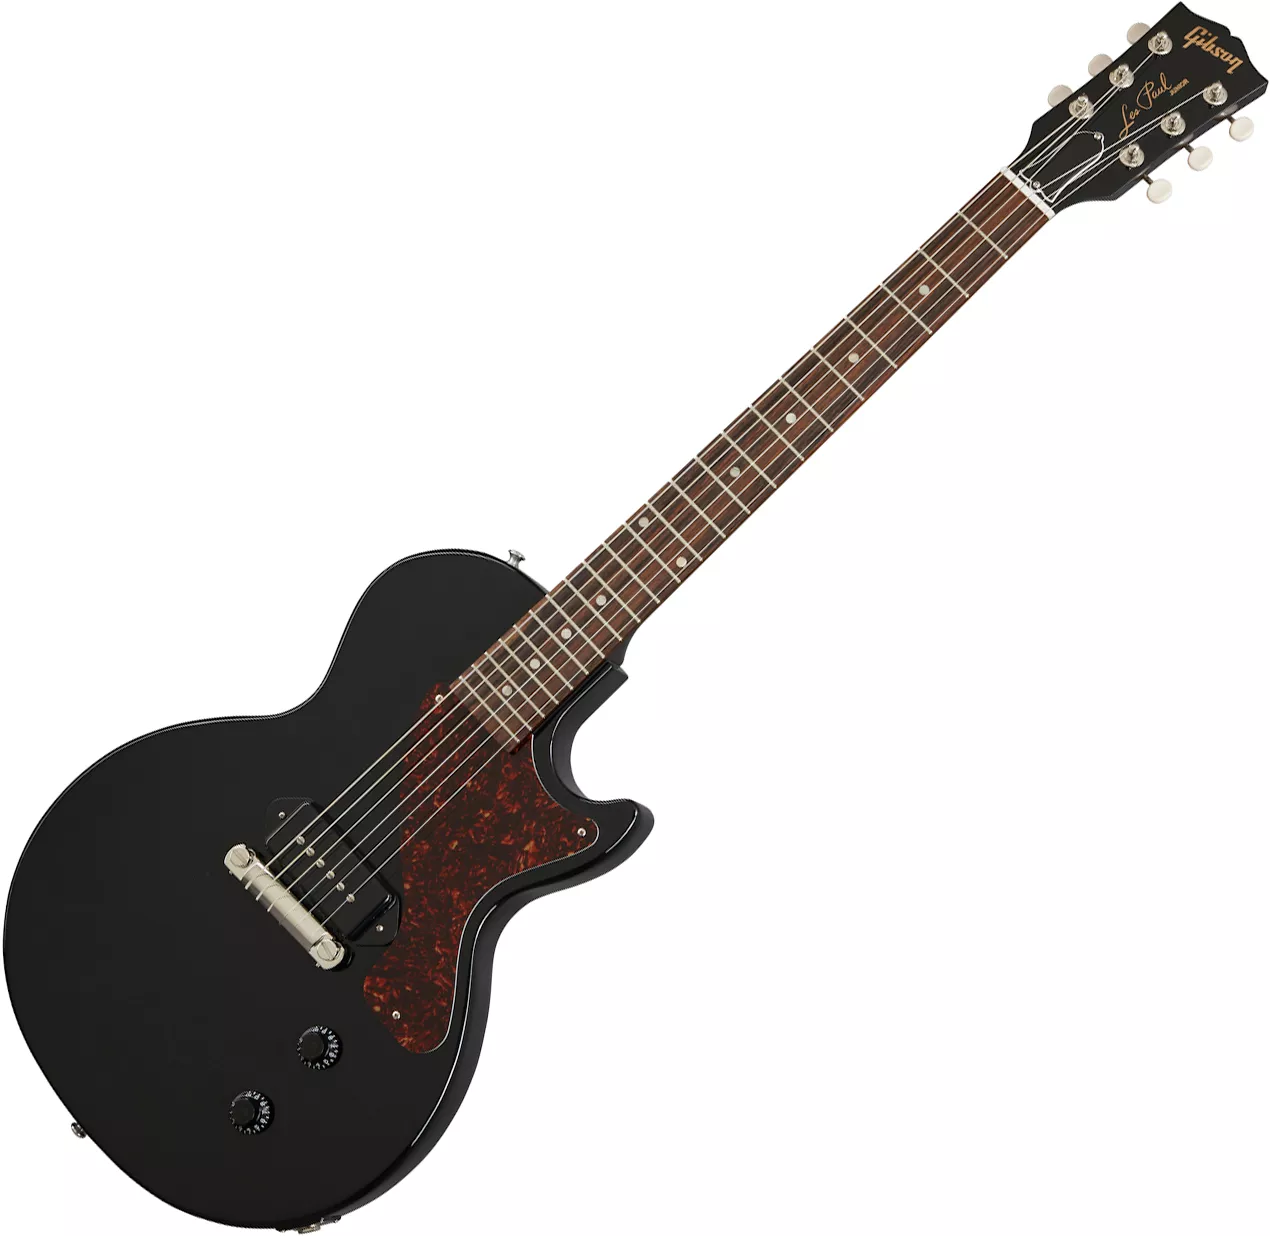 Gibson Les Paul Junior - ebony Single cut electric guitar black